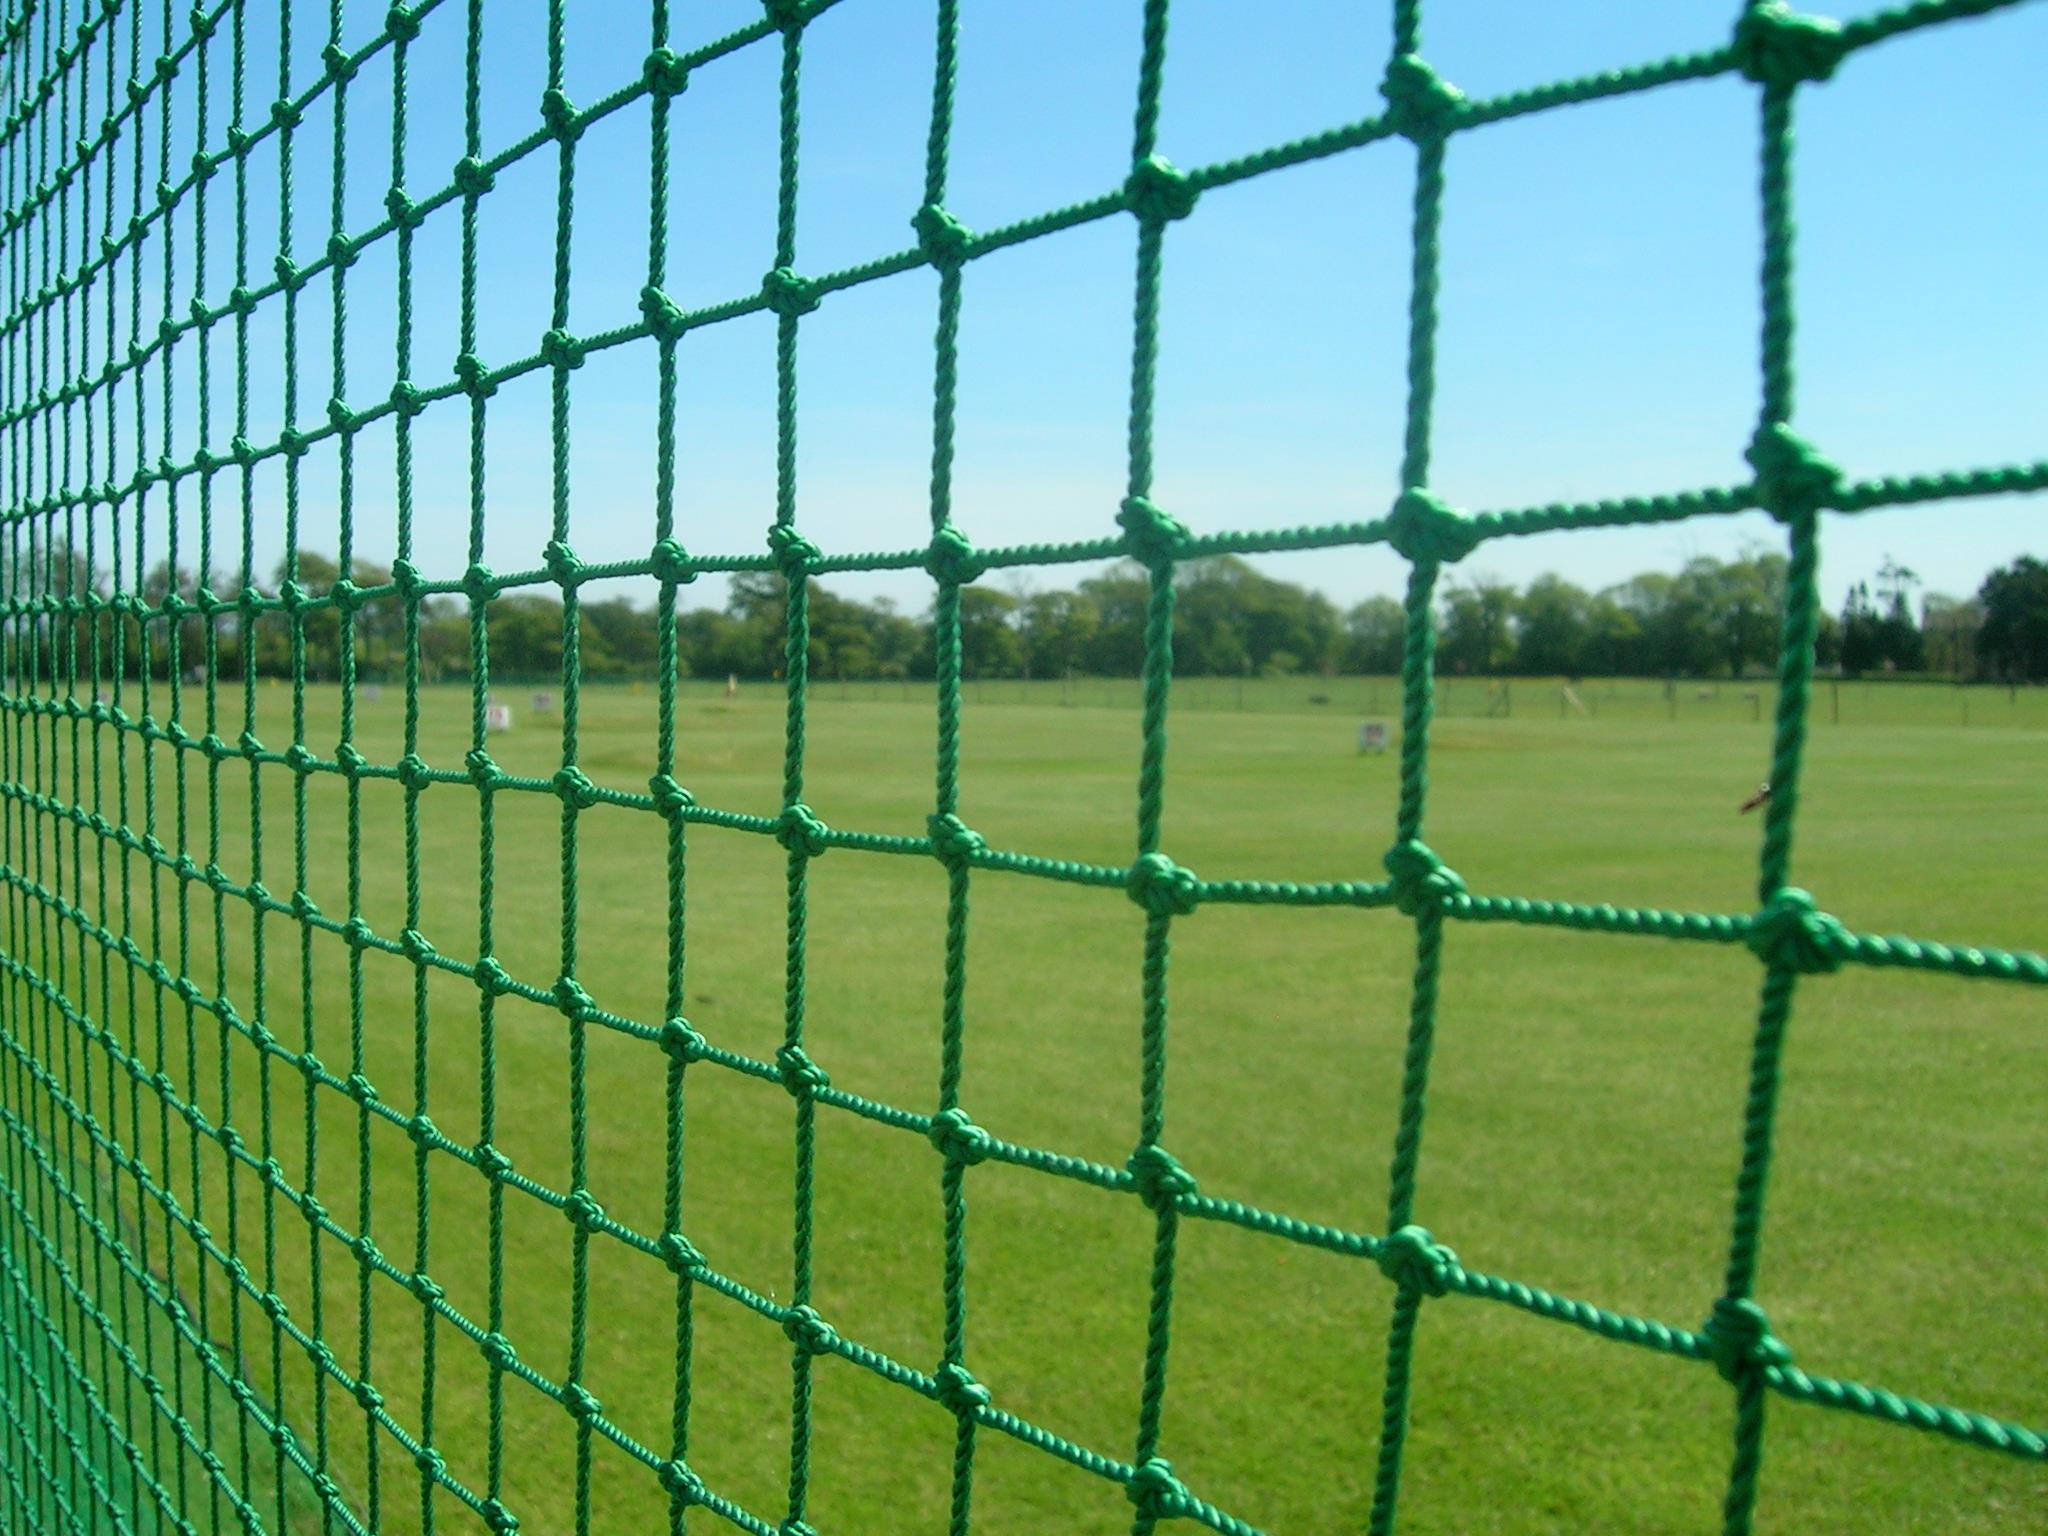 Soccer net enclosure close up